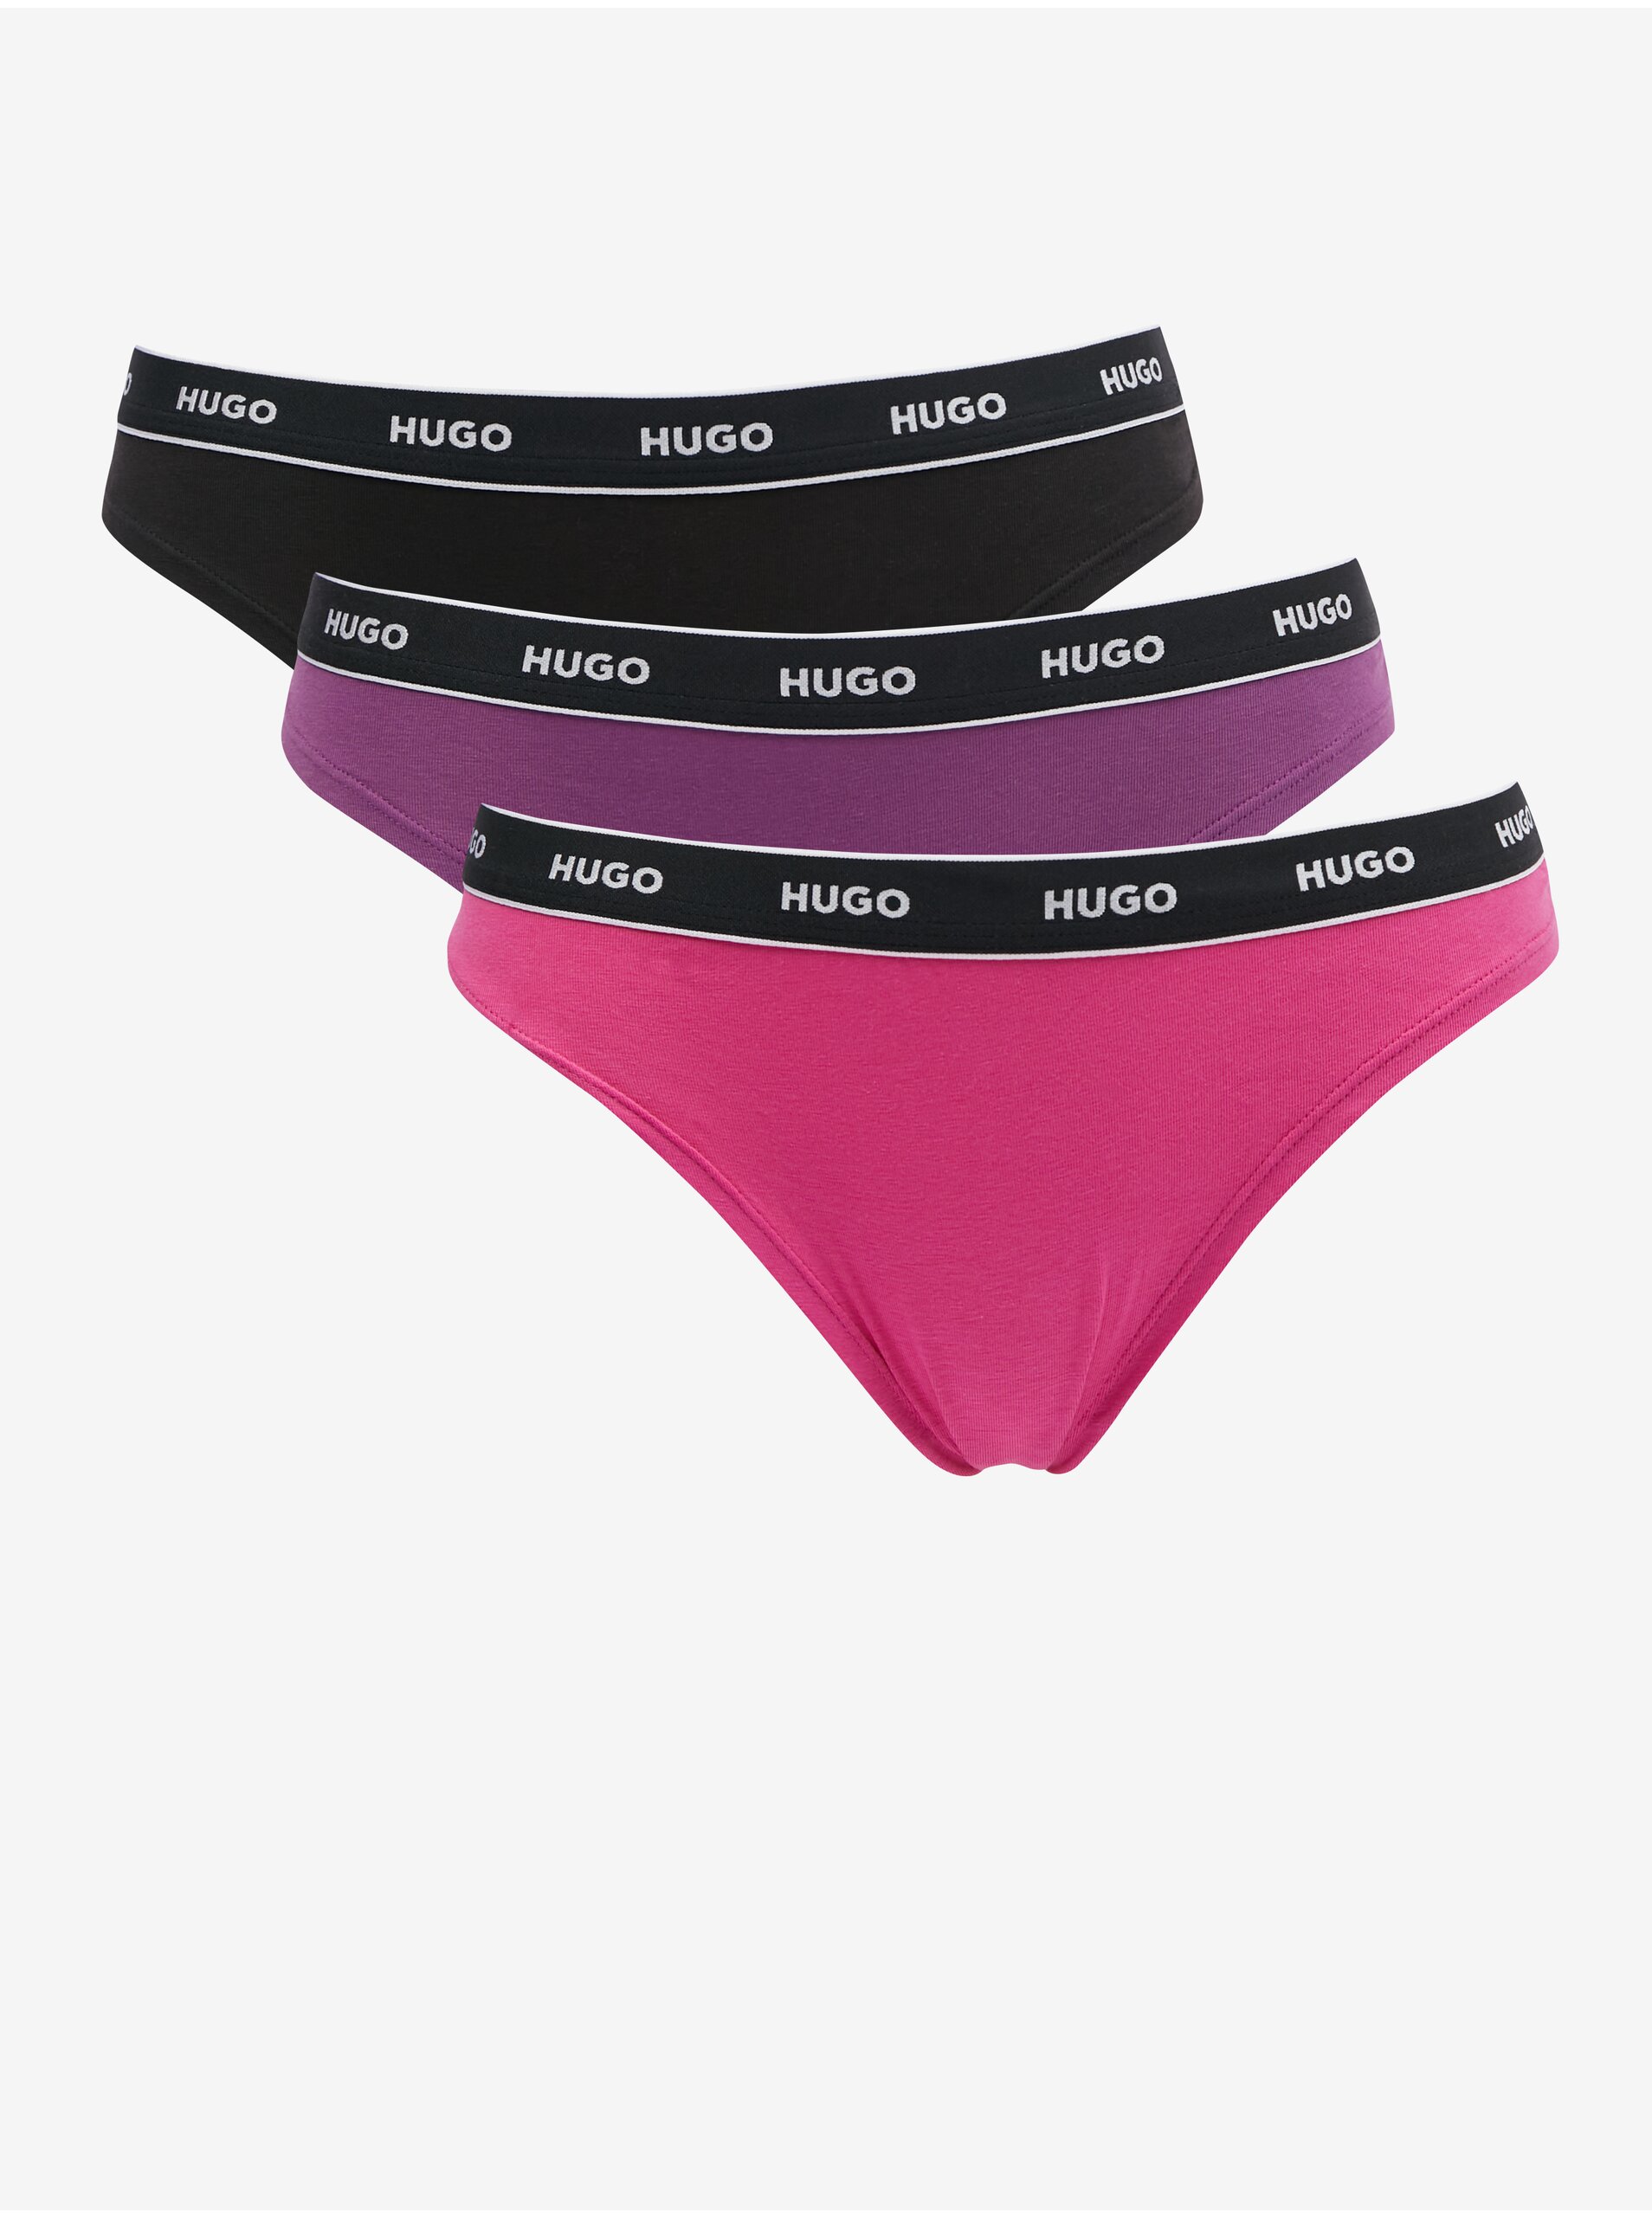 E-shop Sada tří dámských tang v černé, fialové a tmavě růžové barvě HUGO